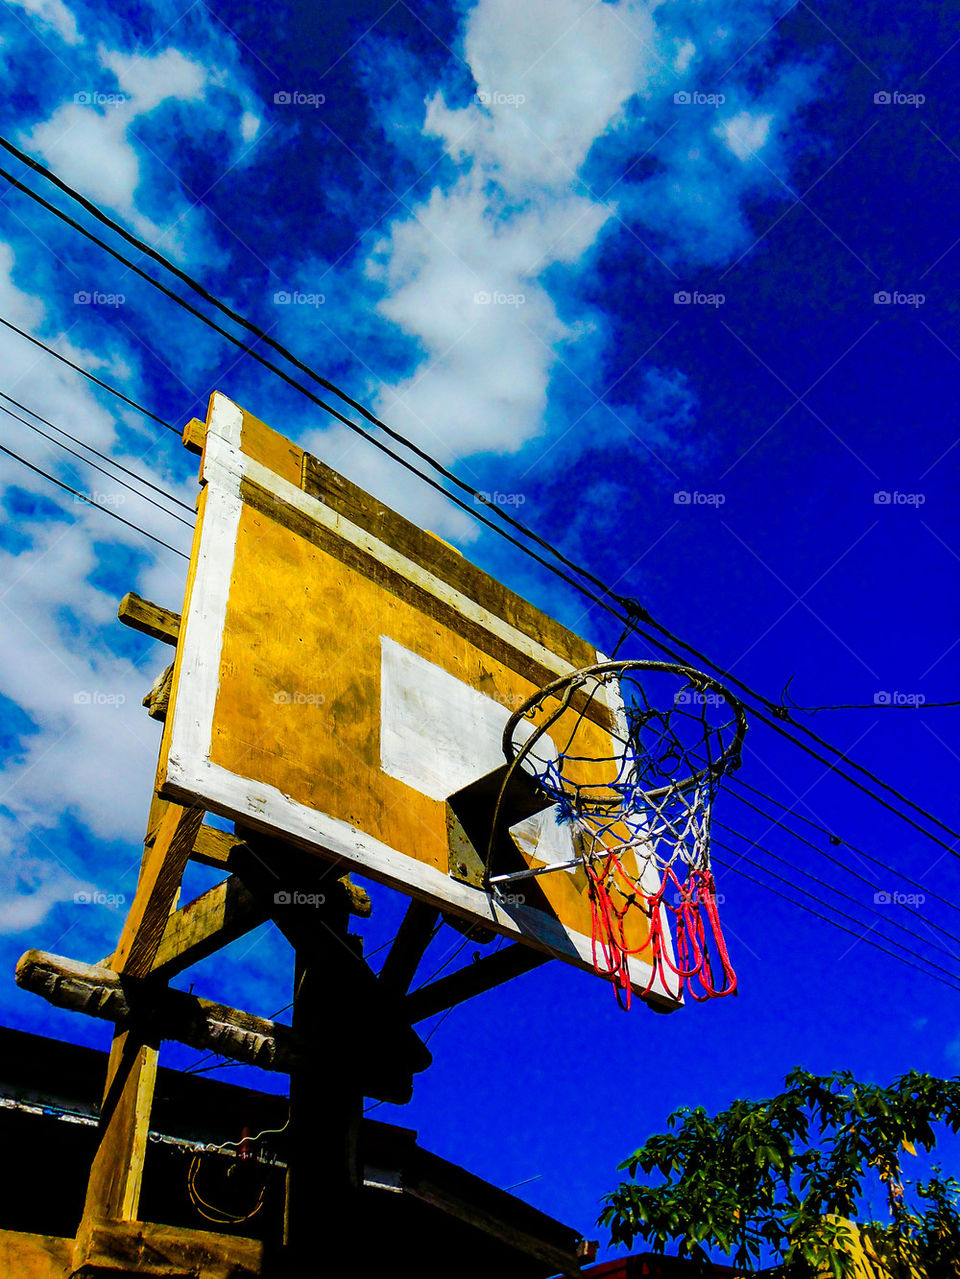 street basketball court